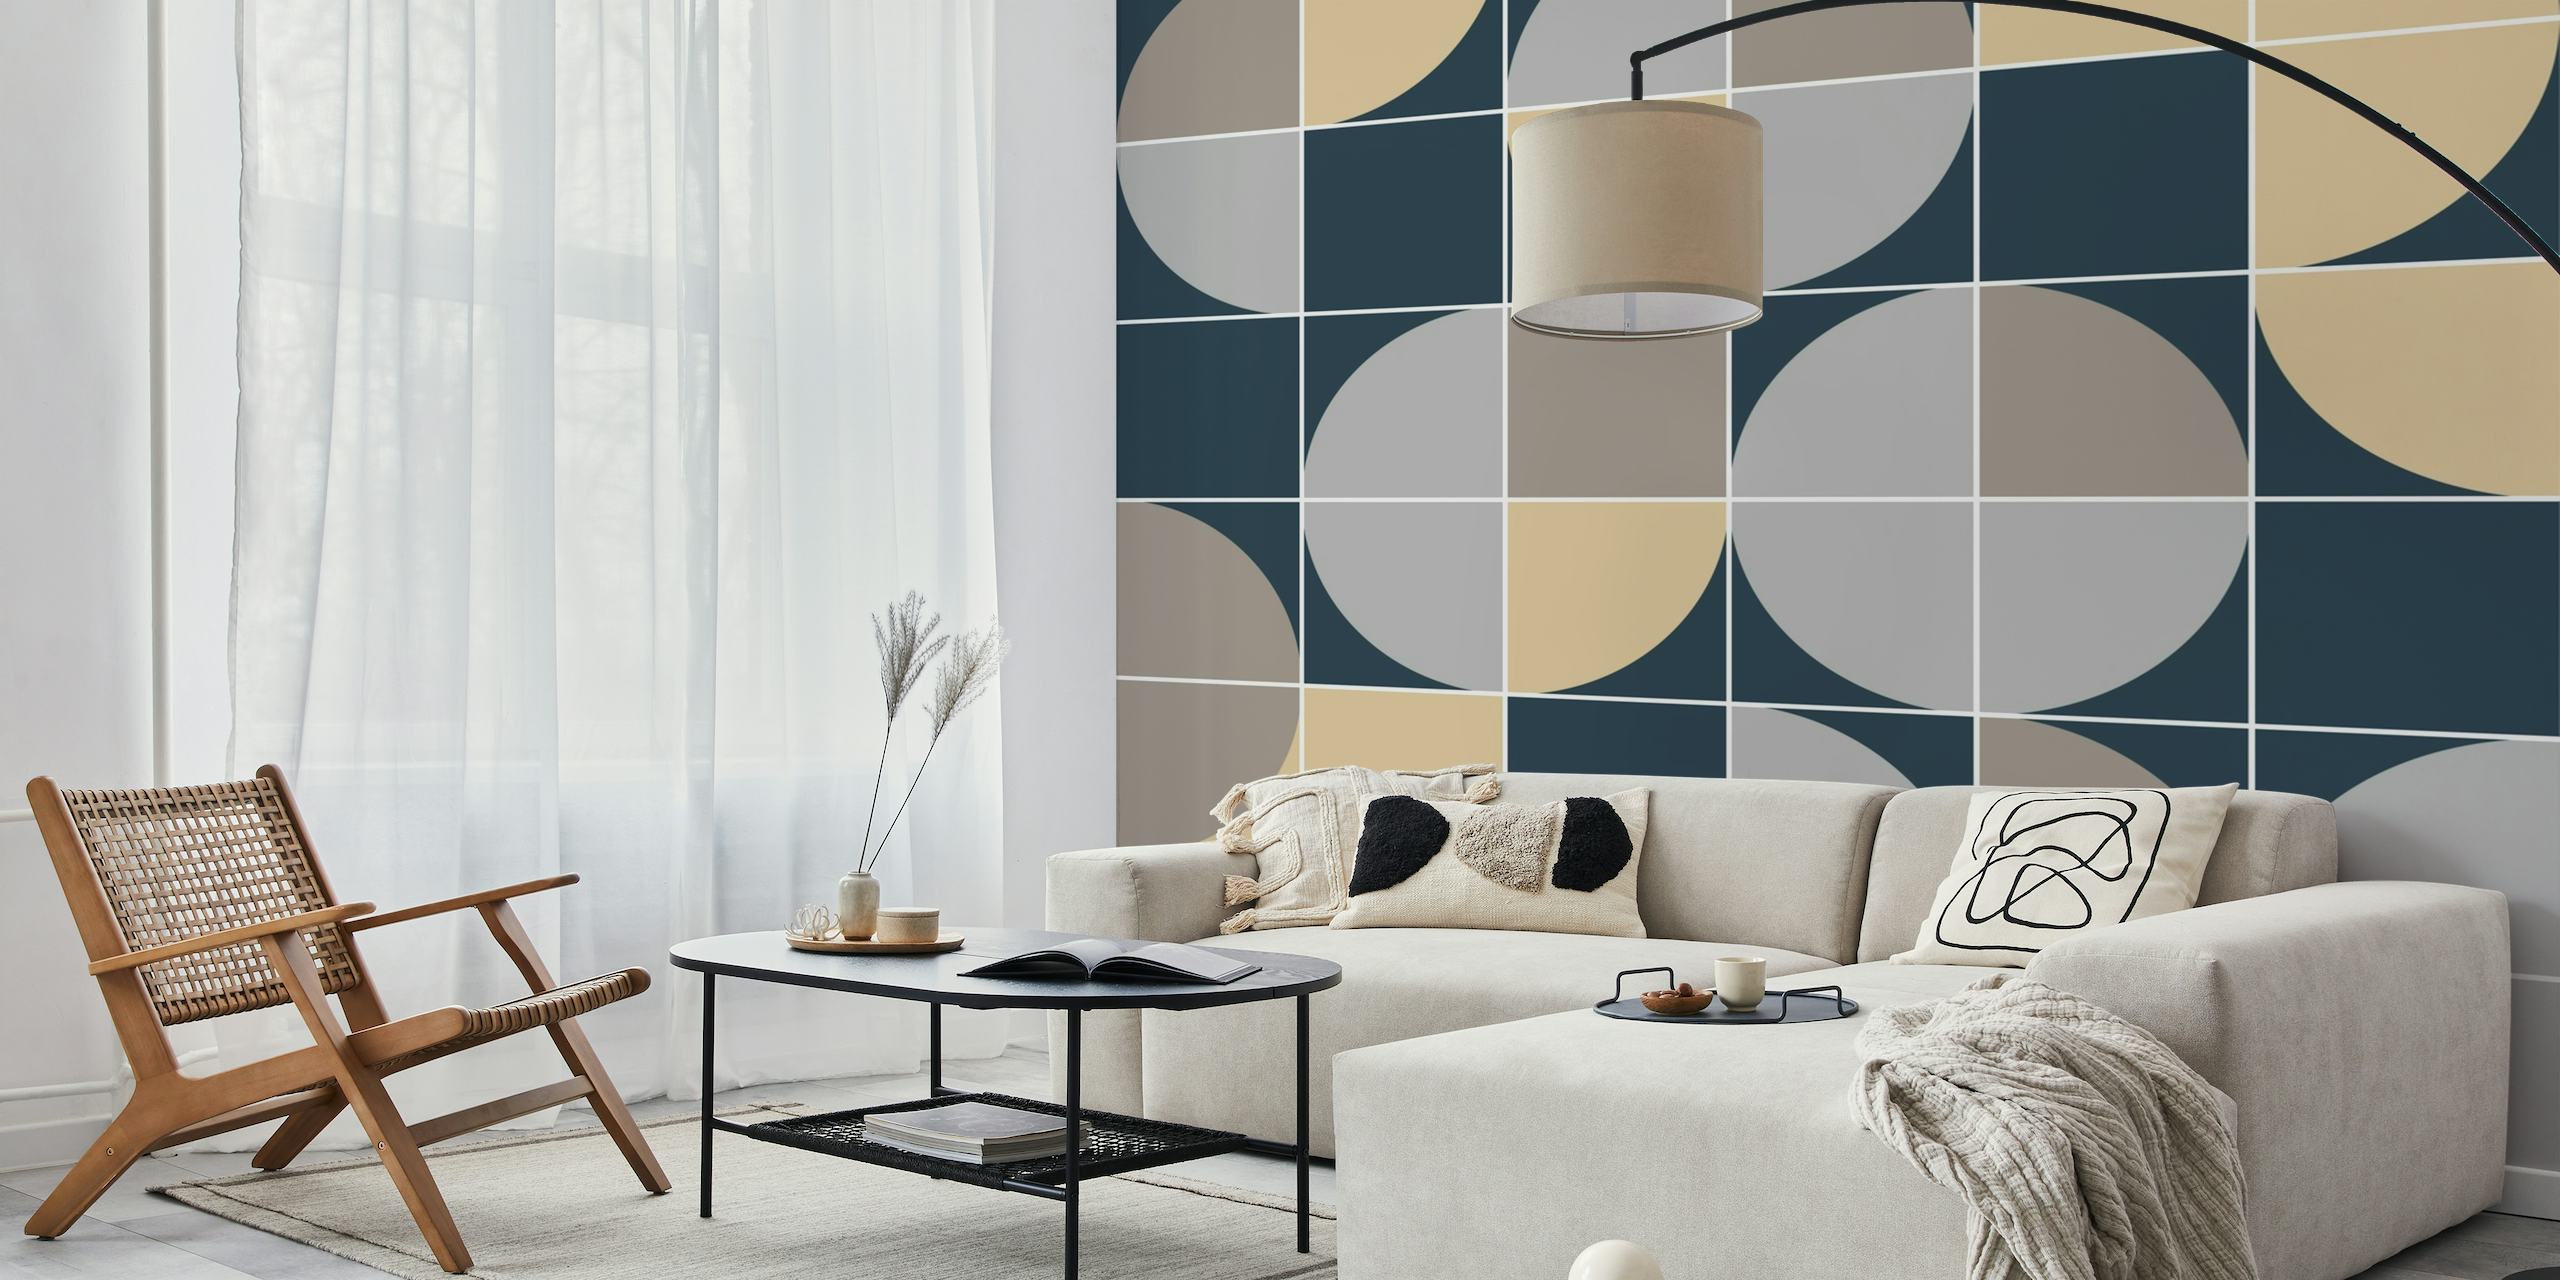 Fotomural de pared circular abstracto mod retro con estampado geométrico en tonos beige, azul marino y gris